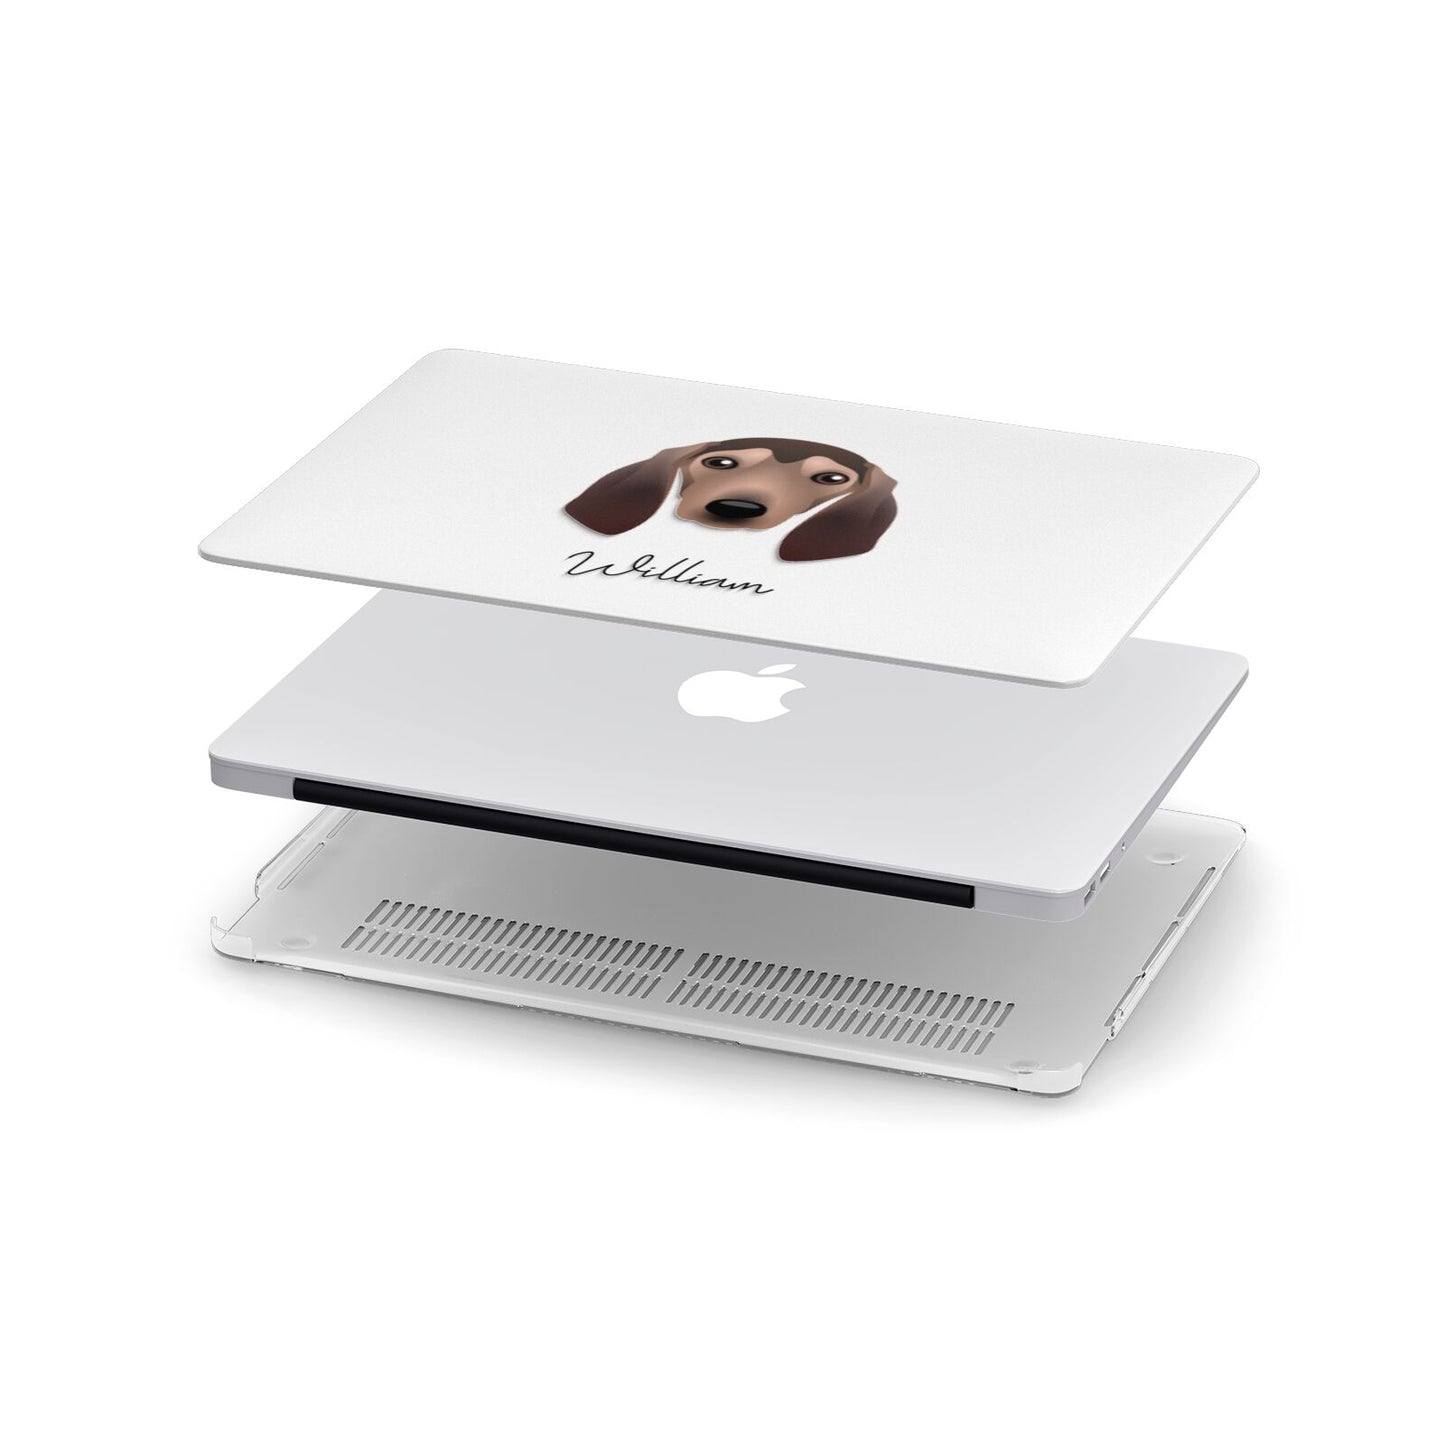 Segugio Italiano Personalised Apple MacBook Case in Detail